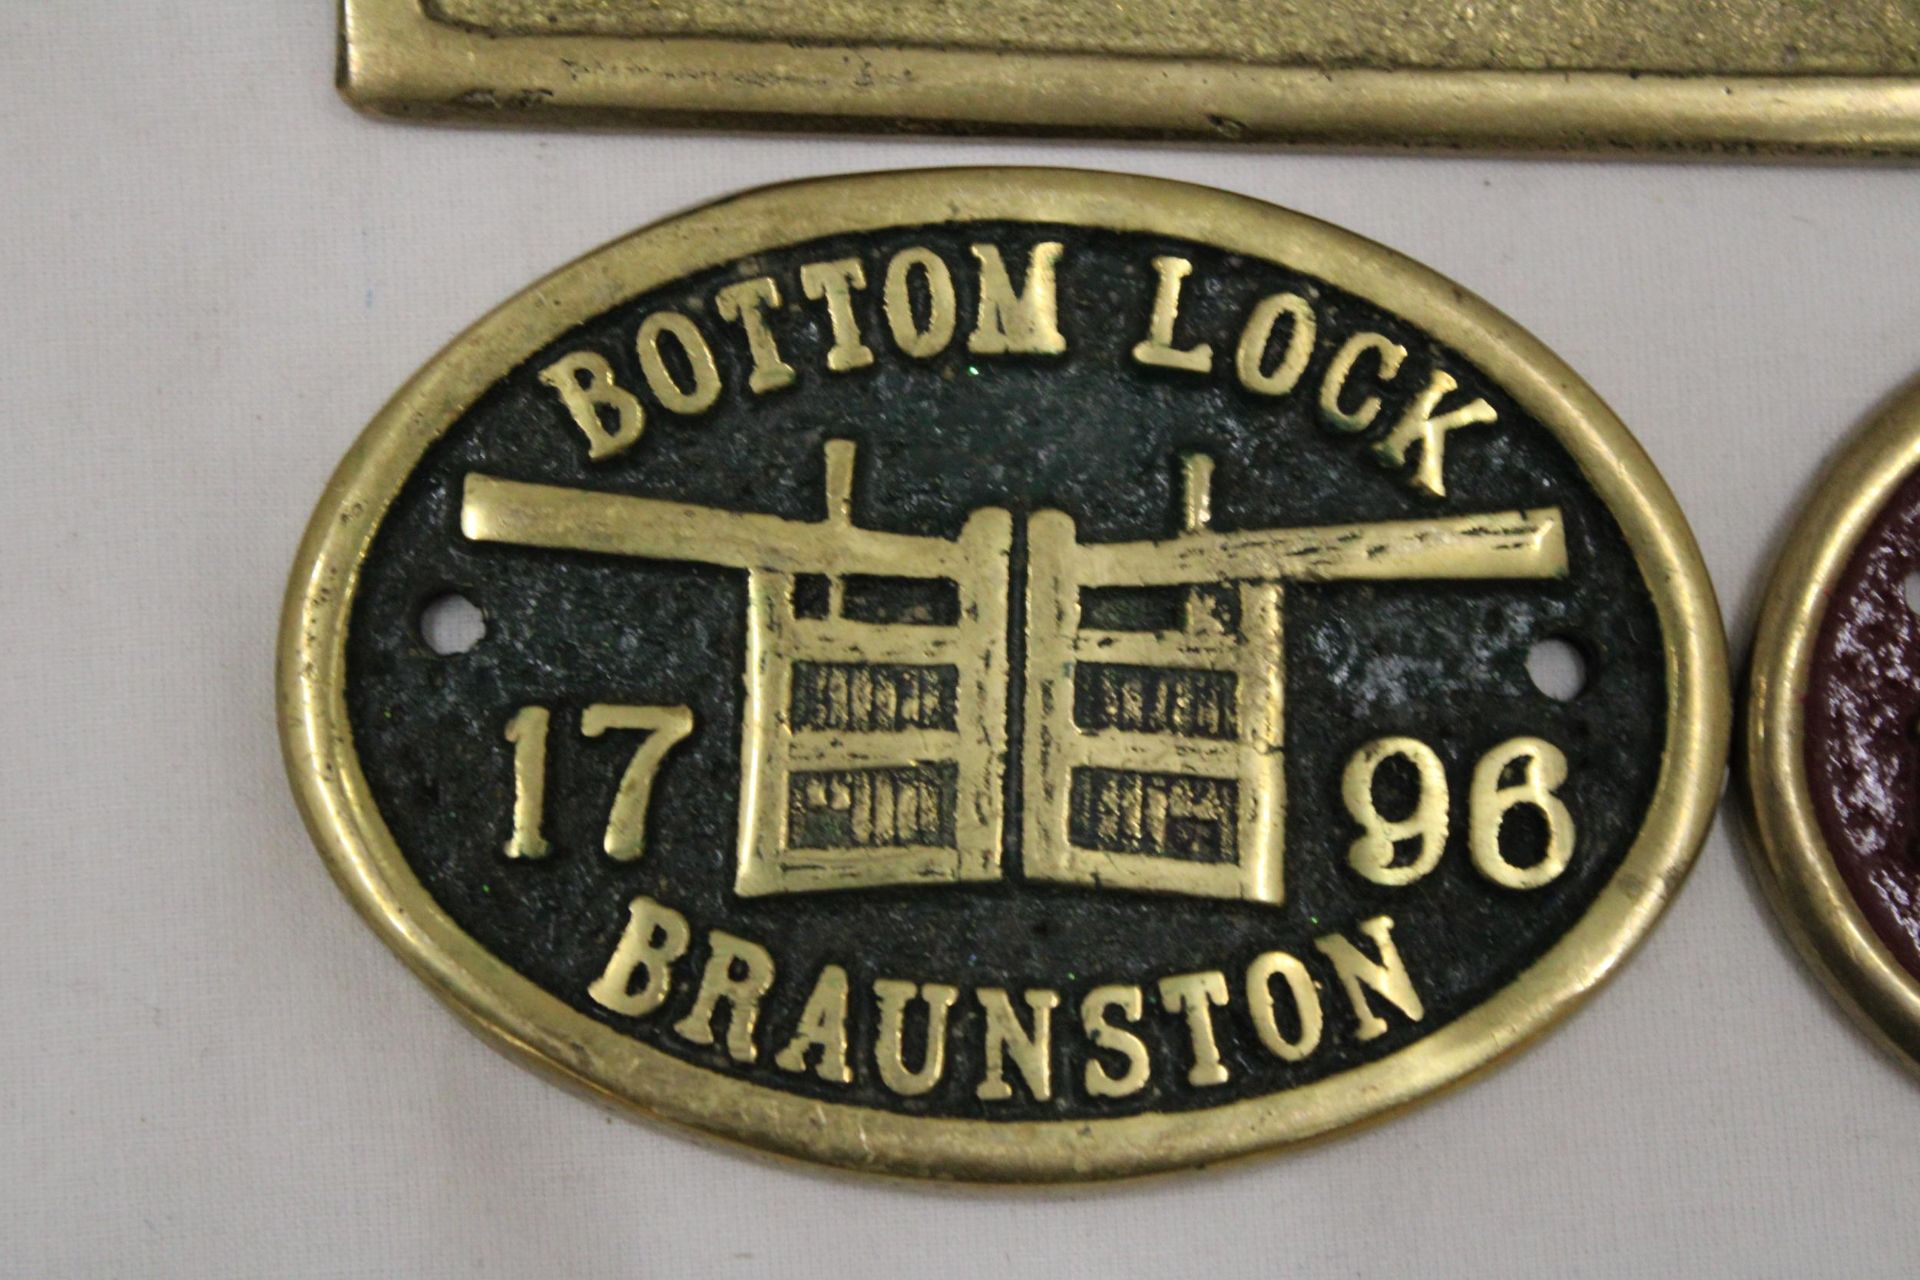 THREE BRASS SIGNS TO INCLUDE, RESTAURANT, BOTTOM LOCK, BRAUNSTON AND BRAUNSTON TUNNEL - Bild 3 aus 5